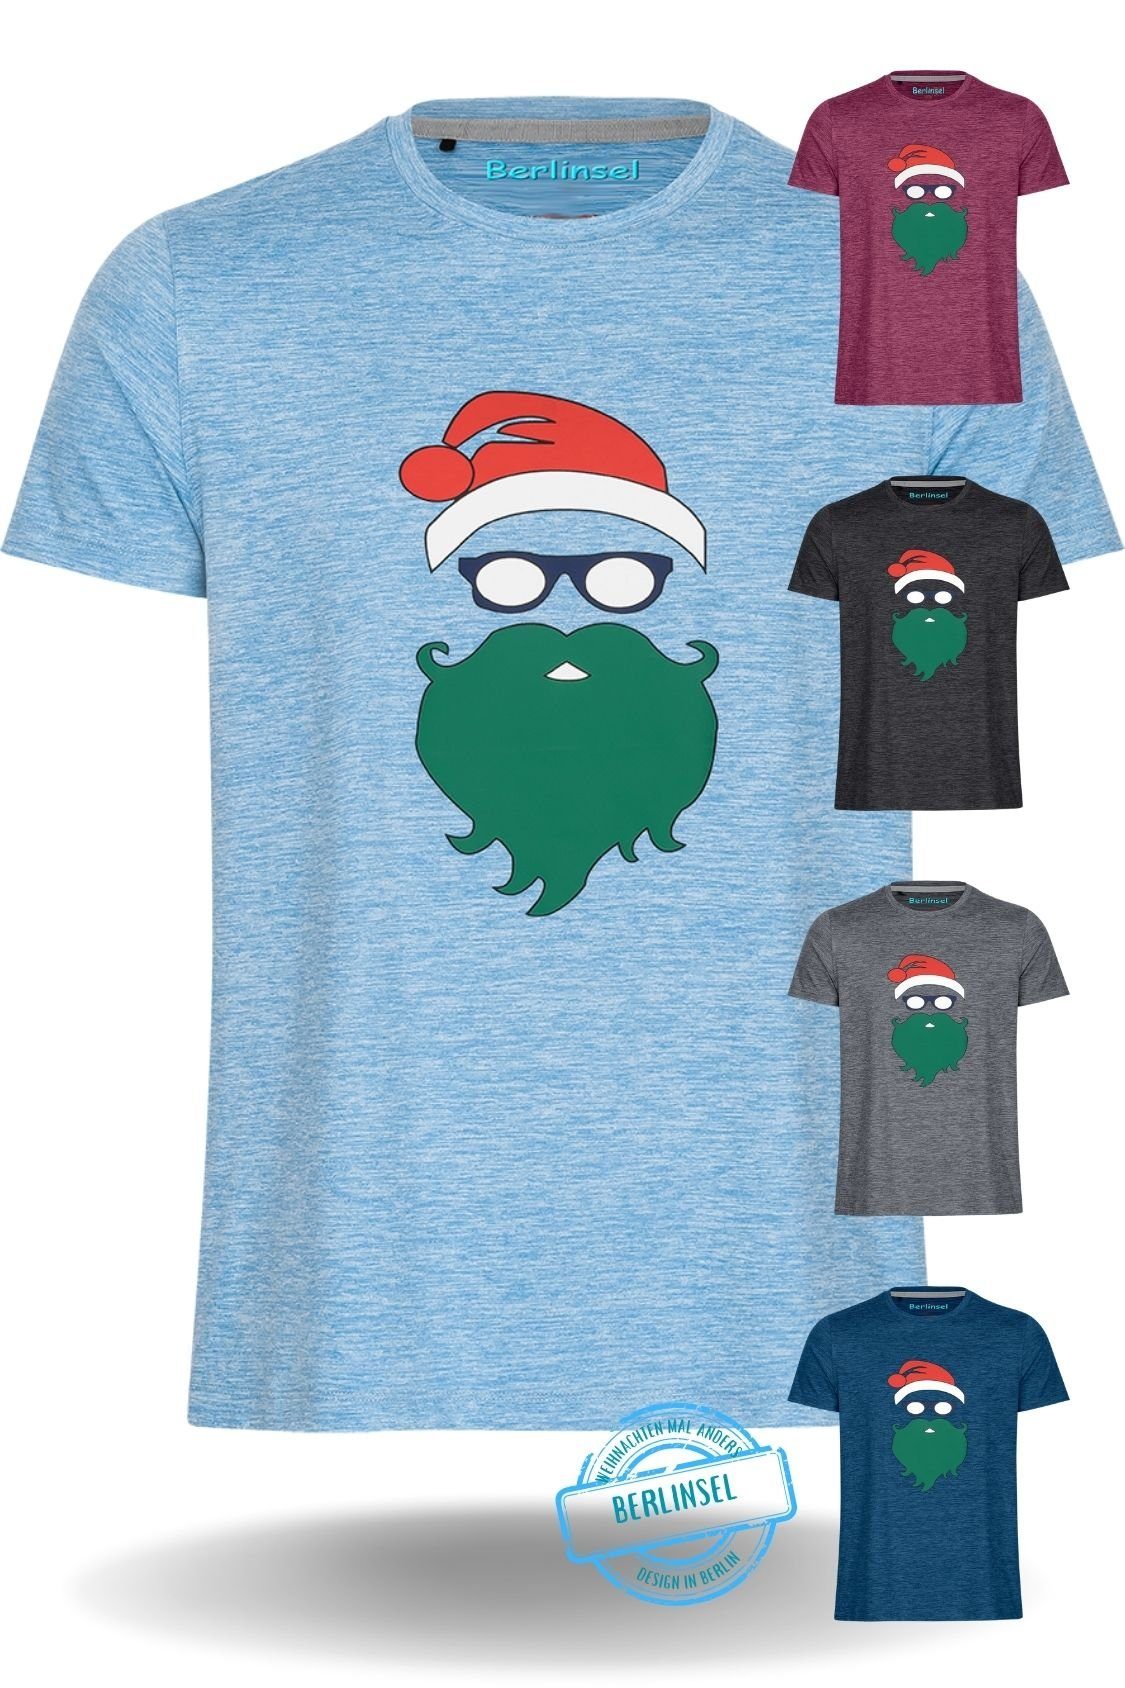 Männer Berlinsel Weihnachtsshirt Weihnachtsgeschenk, T-Shirt Printshirt hellblau Weihnachtsfoto Weihnachtsfeier, Herren Weihnachtsoutfit